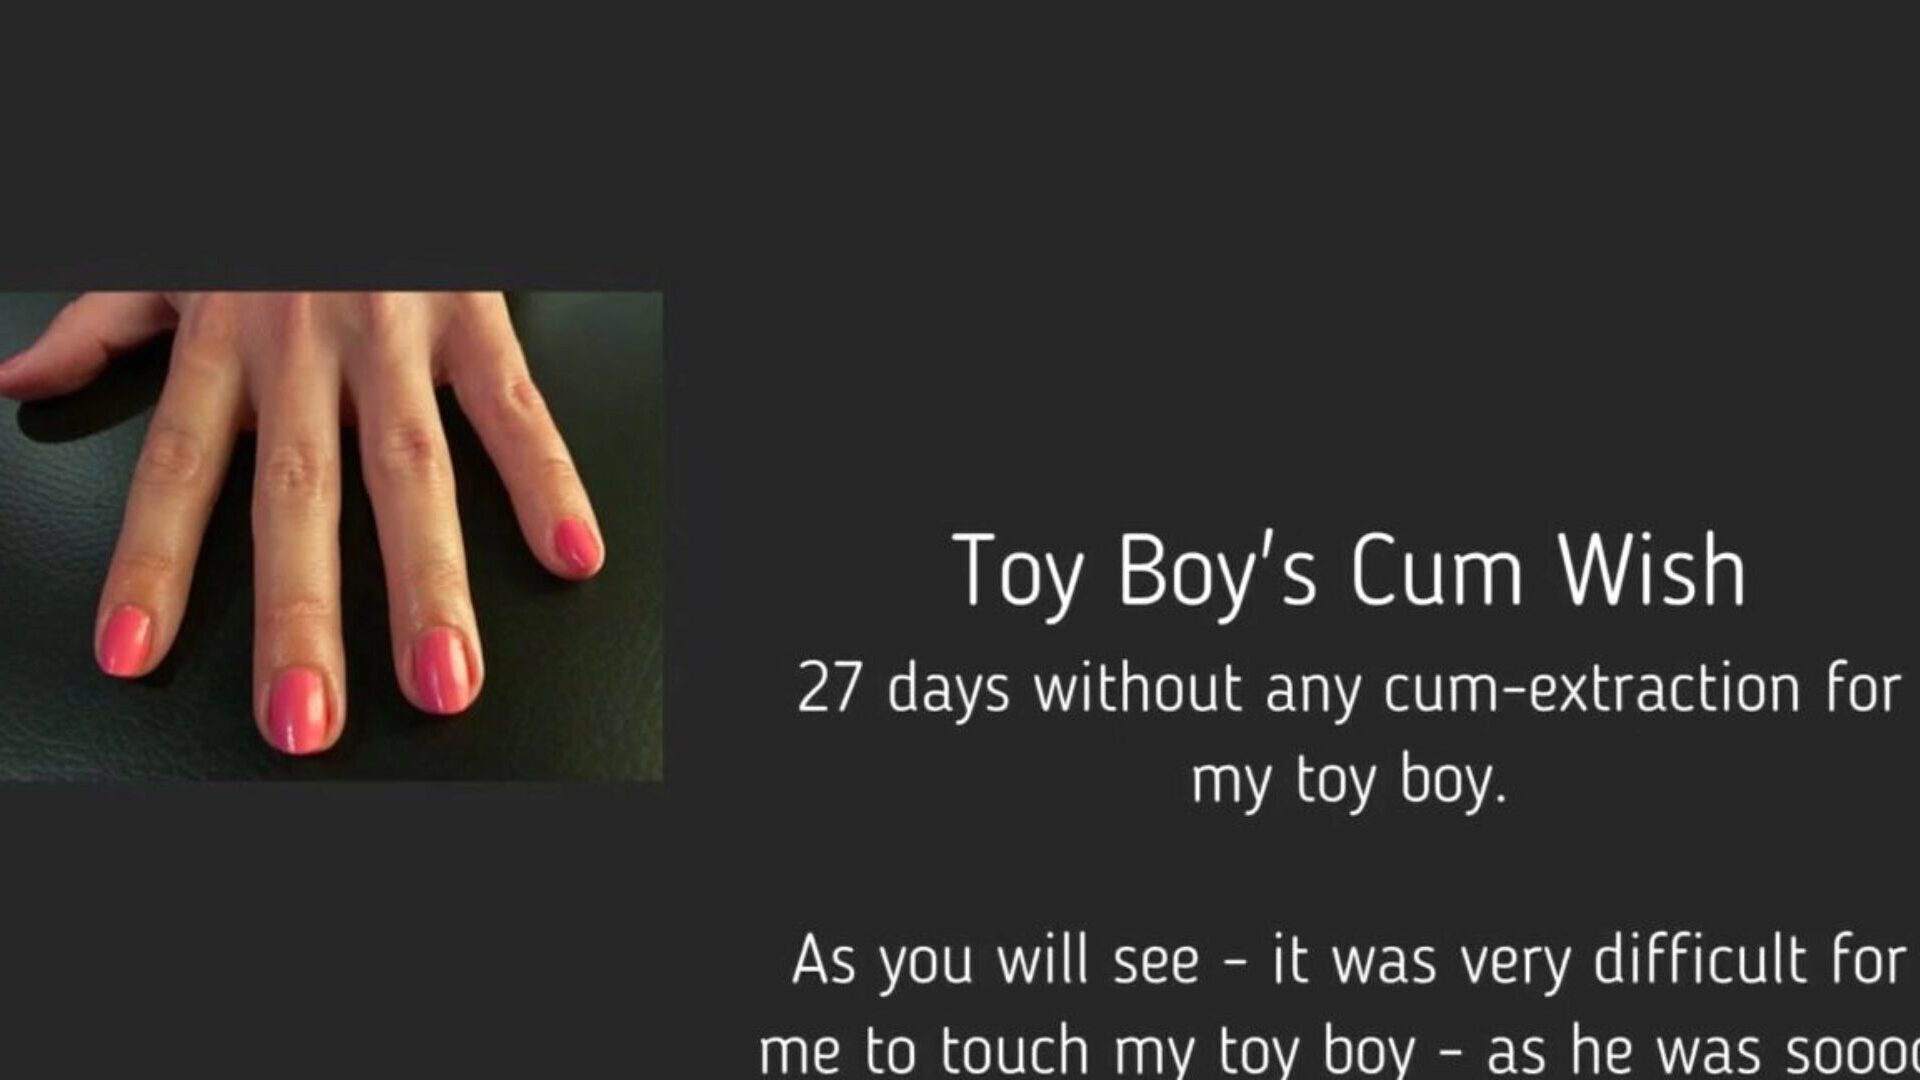 oyuncak oğlanın cum dilek: bedava femdom handjob hd porno videosu 95 femdom handjob bel ami cum & tube çocuk hd pornografi video sahnelerinin en seksi koleksiyonuyla xhamster'da ücretsiz olarak oyuncak oğlanın cum dilek tüp sevişme bölümünü izle